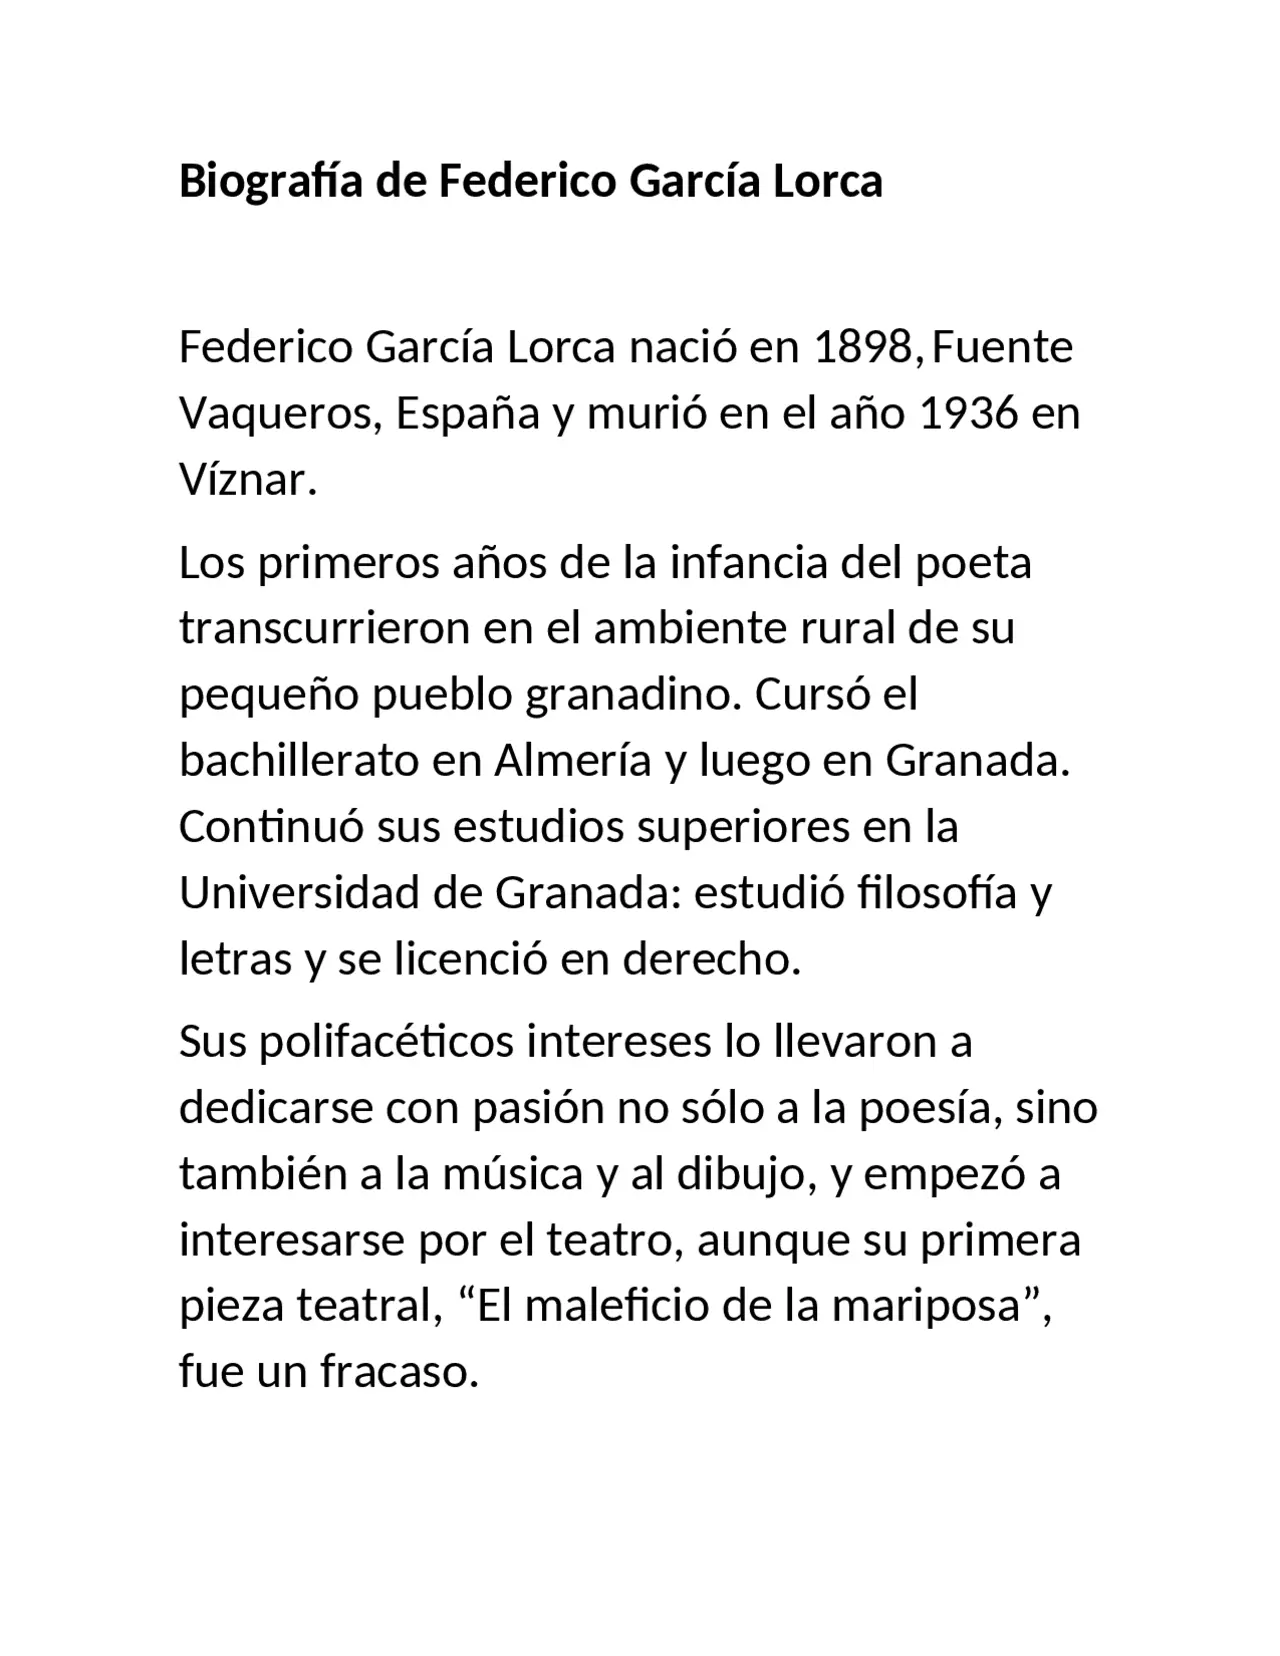 federico garcía lorca biografía resumida - Qué hizo Federico García Lorca en su infancia y juventud